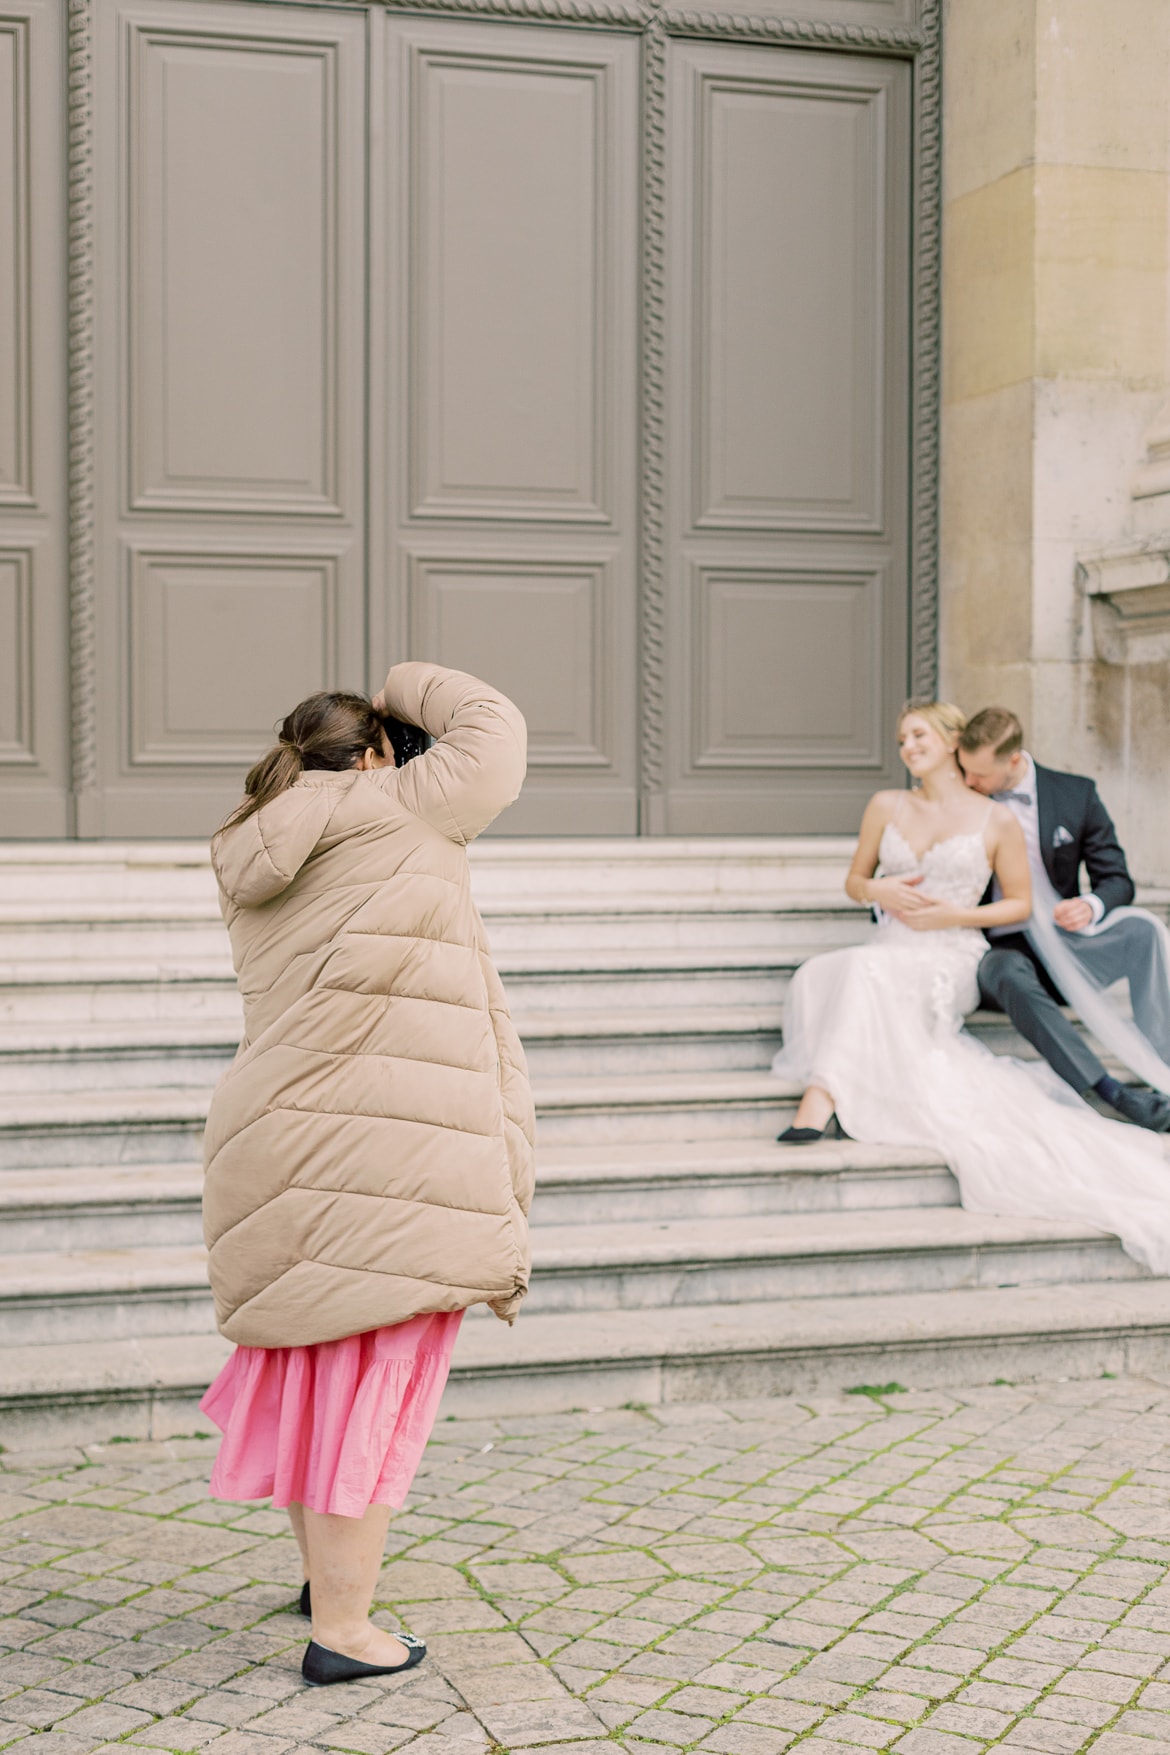 Fotografin fotografiert ein Hochzeitspaar, welches auf einer Treppe sitzt